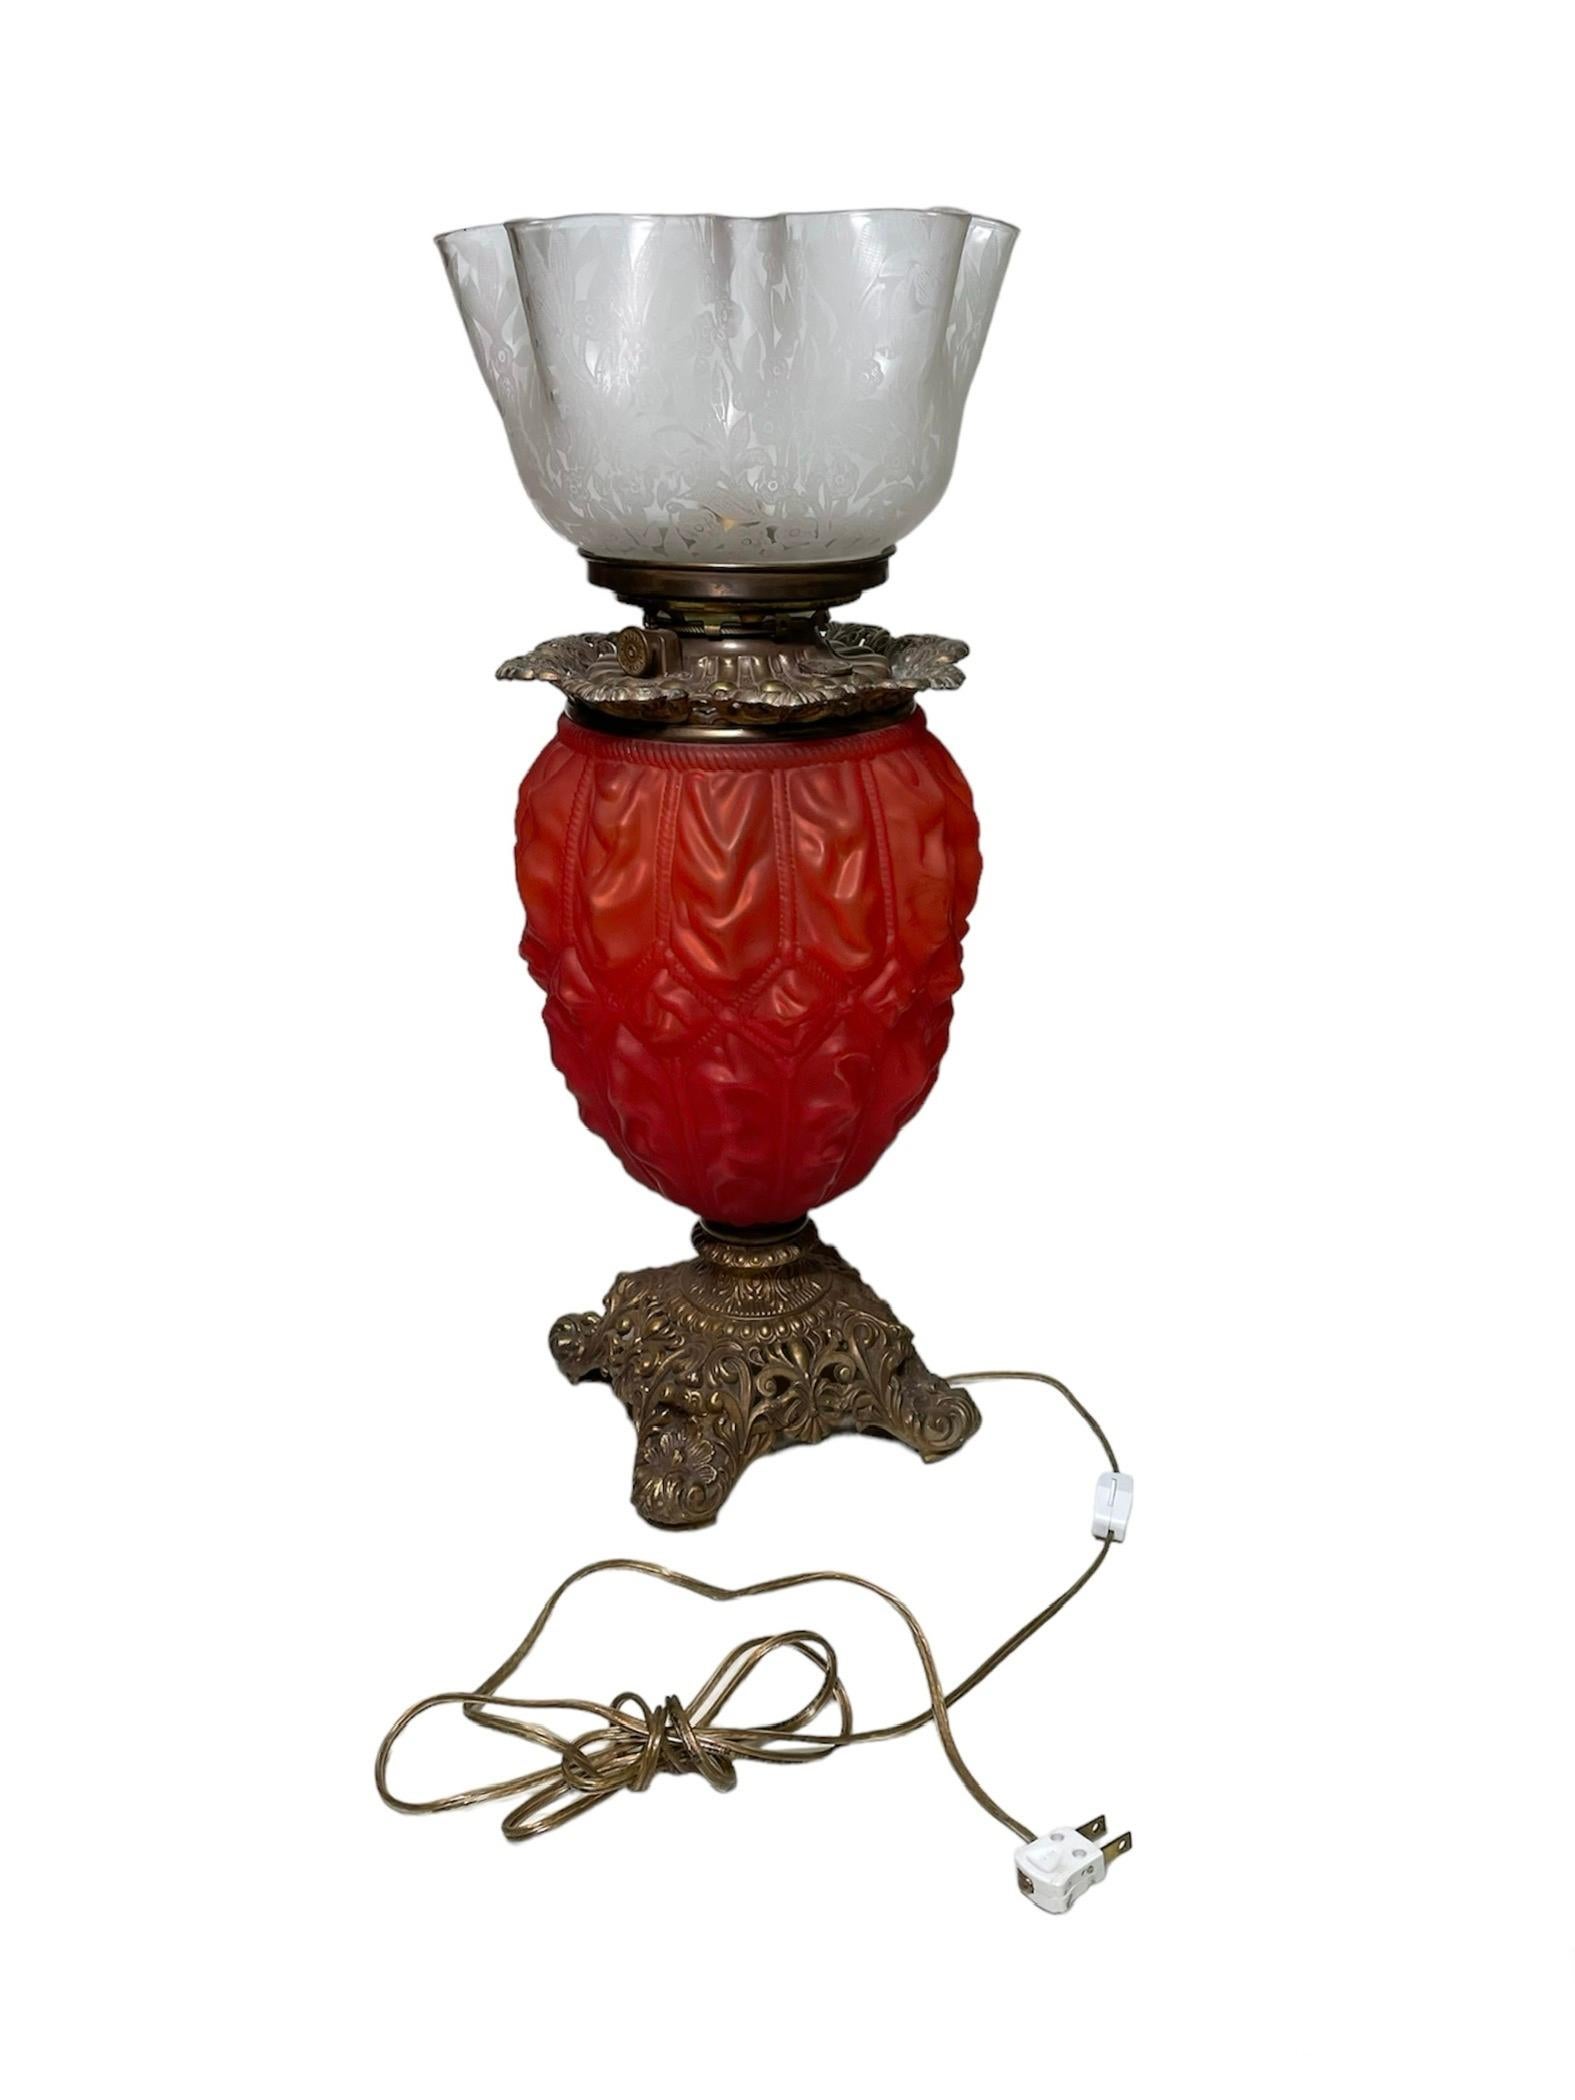 Il s'agit d'une lampe de table victorienne en laiton et en verre. Elle représente une lampe dont le corps bulbeux et plissé, en verre rouge teinté, est décoré de cordes et soutenu par une base carrée en laiton à quatre pieds. La base est ornée d'un